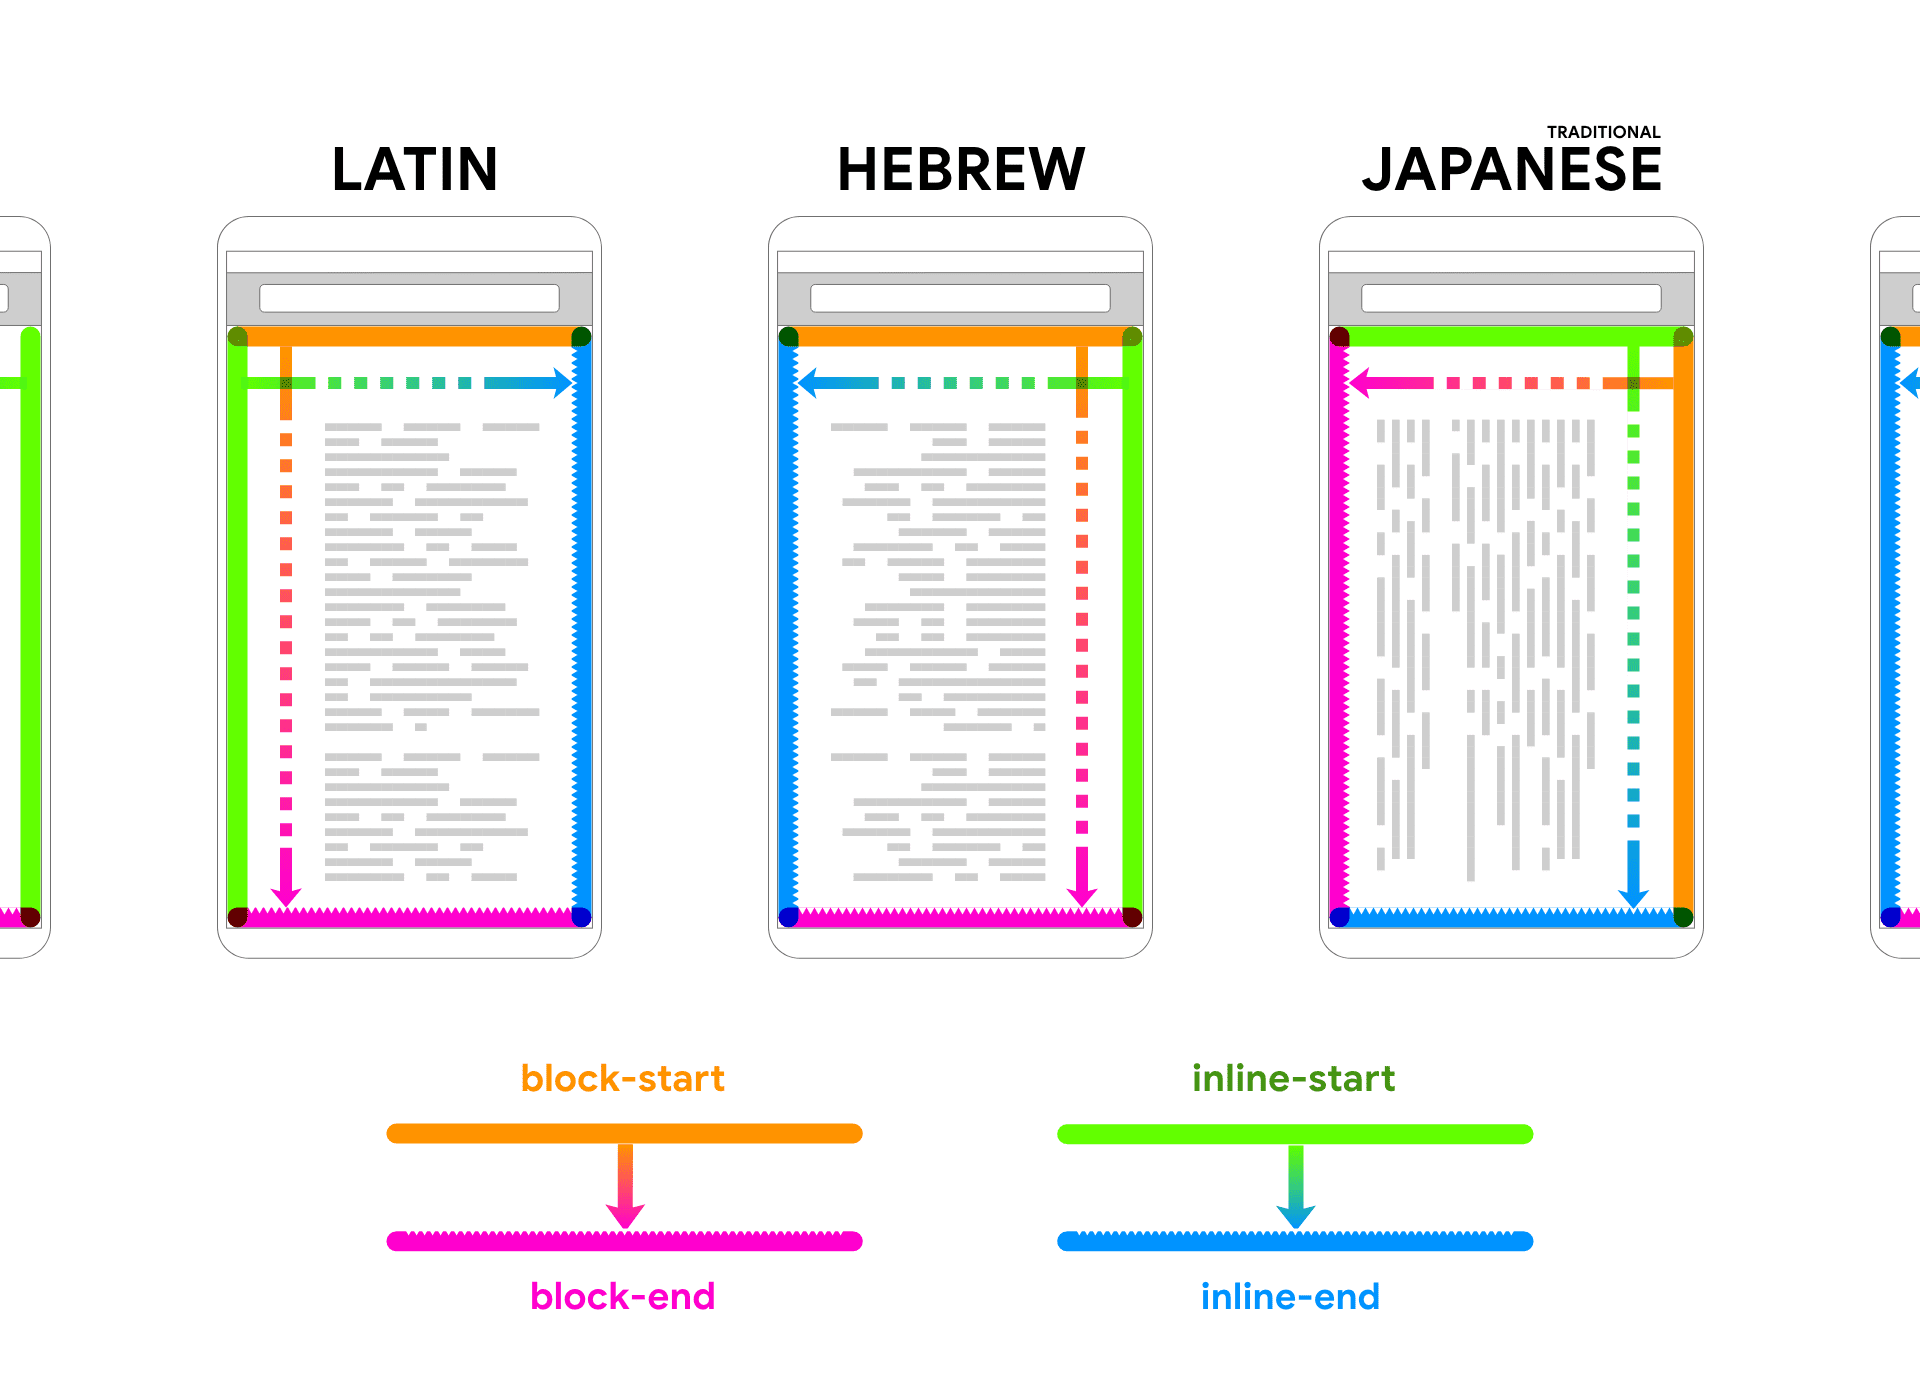 يظهر باللاتينية والعبرية واليابانية أثناء عرض نص عنصر نائب داخل إطار جهاز. تتبع الأسهم والألوان النص للمساعدة في ربط اتجاهي القالب والمحتوى المضمّن.